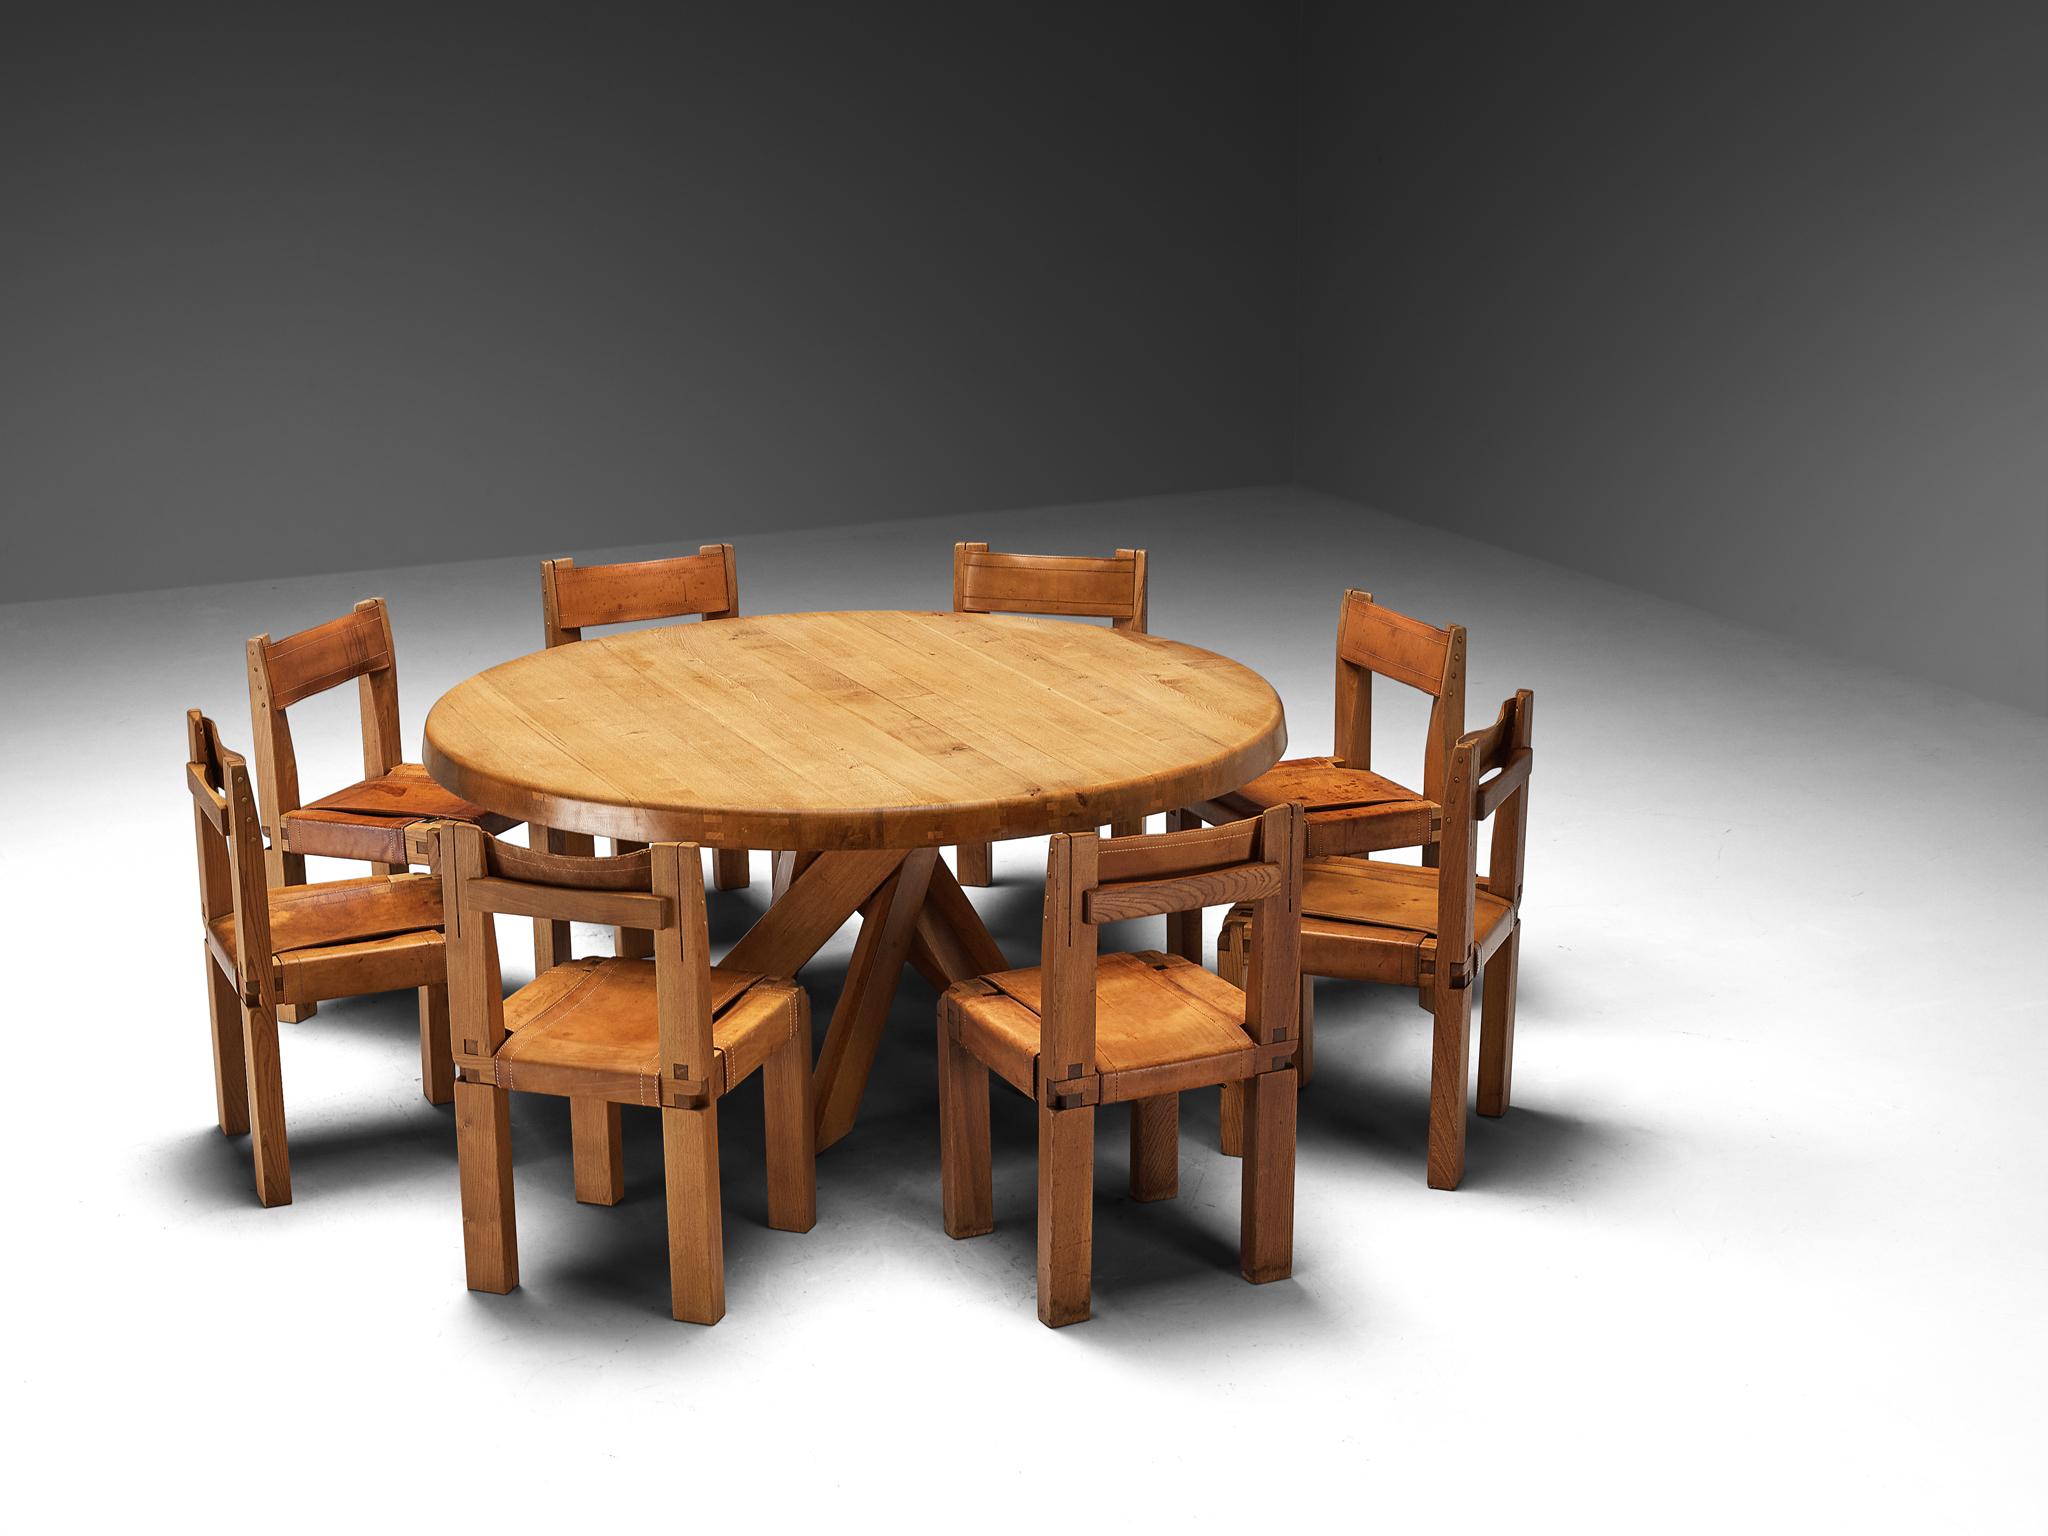 Superbe ensemble de salle à manger de Pierre Chapo avec table de salle à manger T21E et douze chaises de salle à manger S11 

Pierre CIRCA, Table de salle à manger 'Sfax', modèle 'T21E', orme, France, circa 1973

Ce modèle est une première édition,